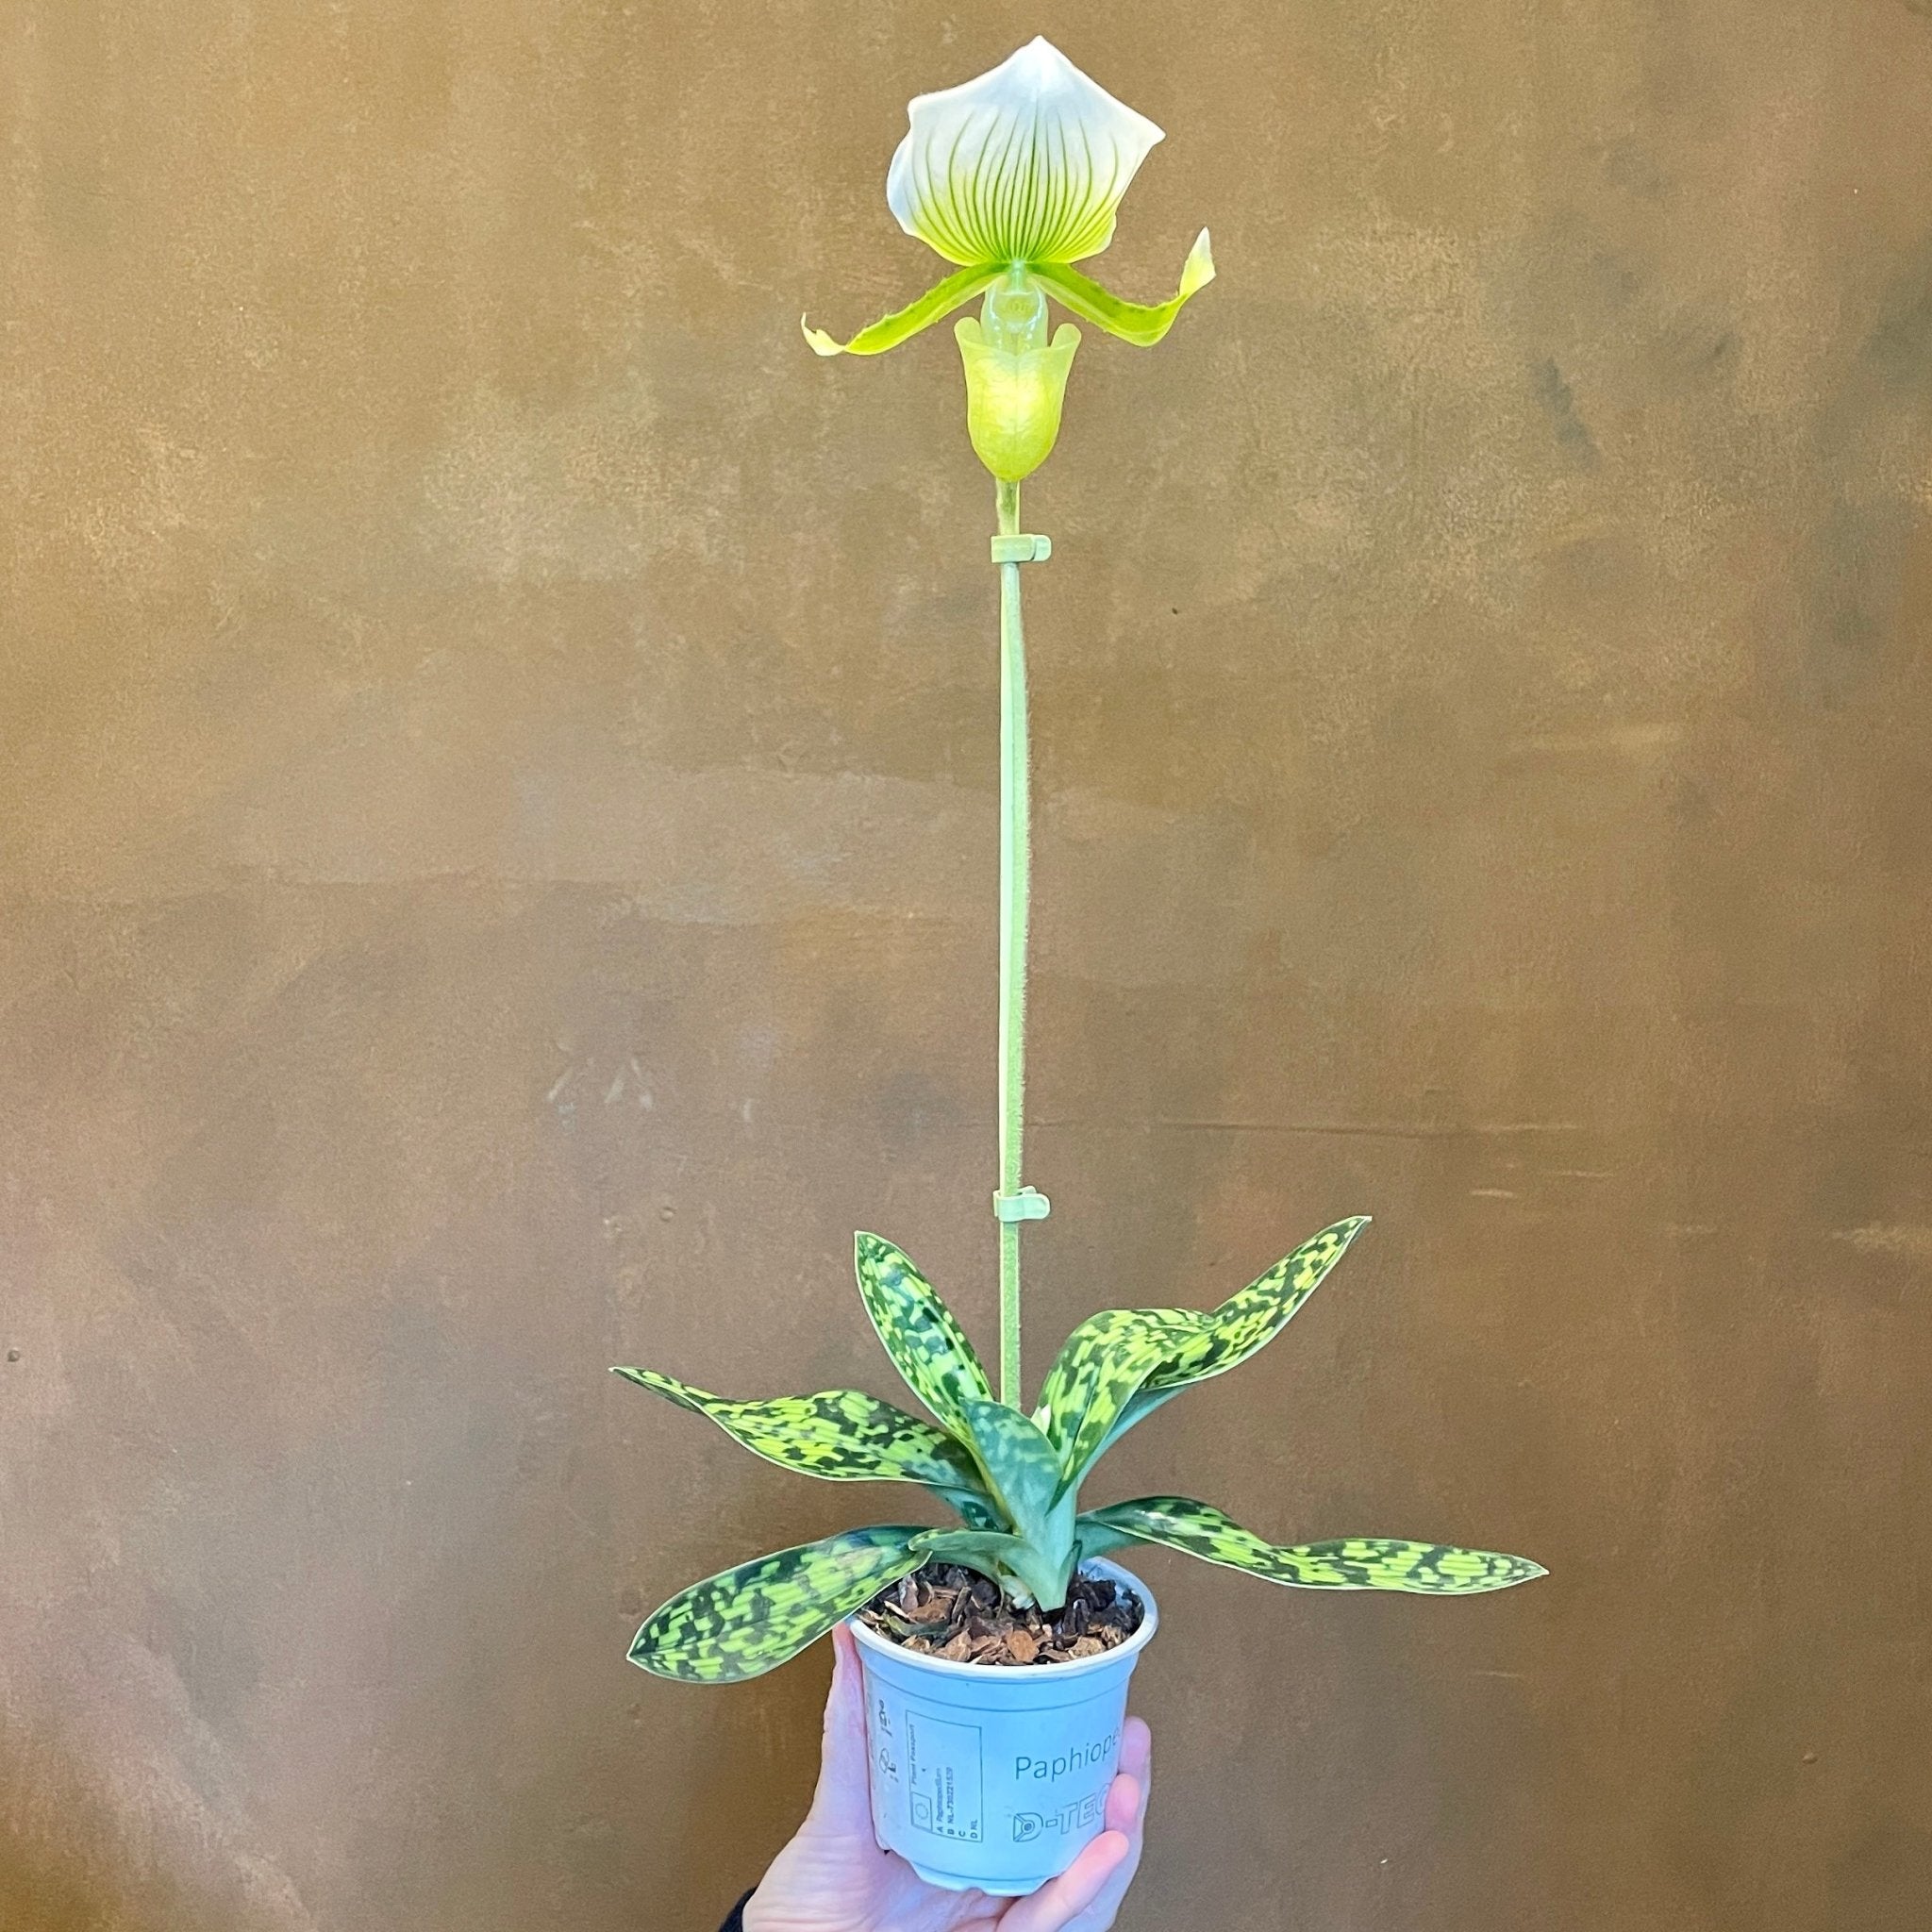 Paphiopedilum x maudiae 'Femma' - grow urban. UK